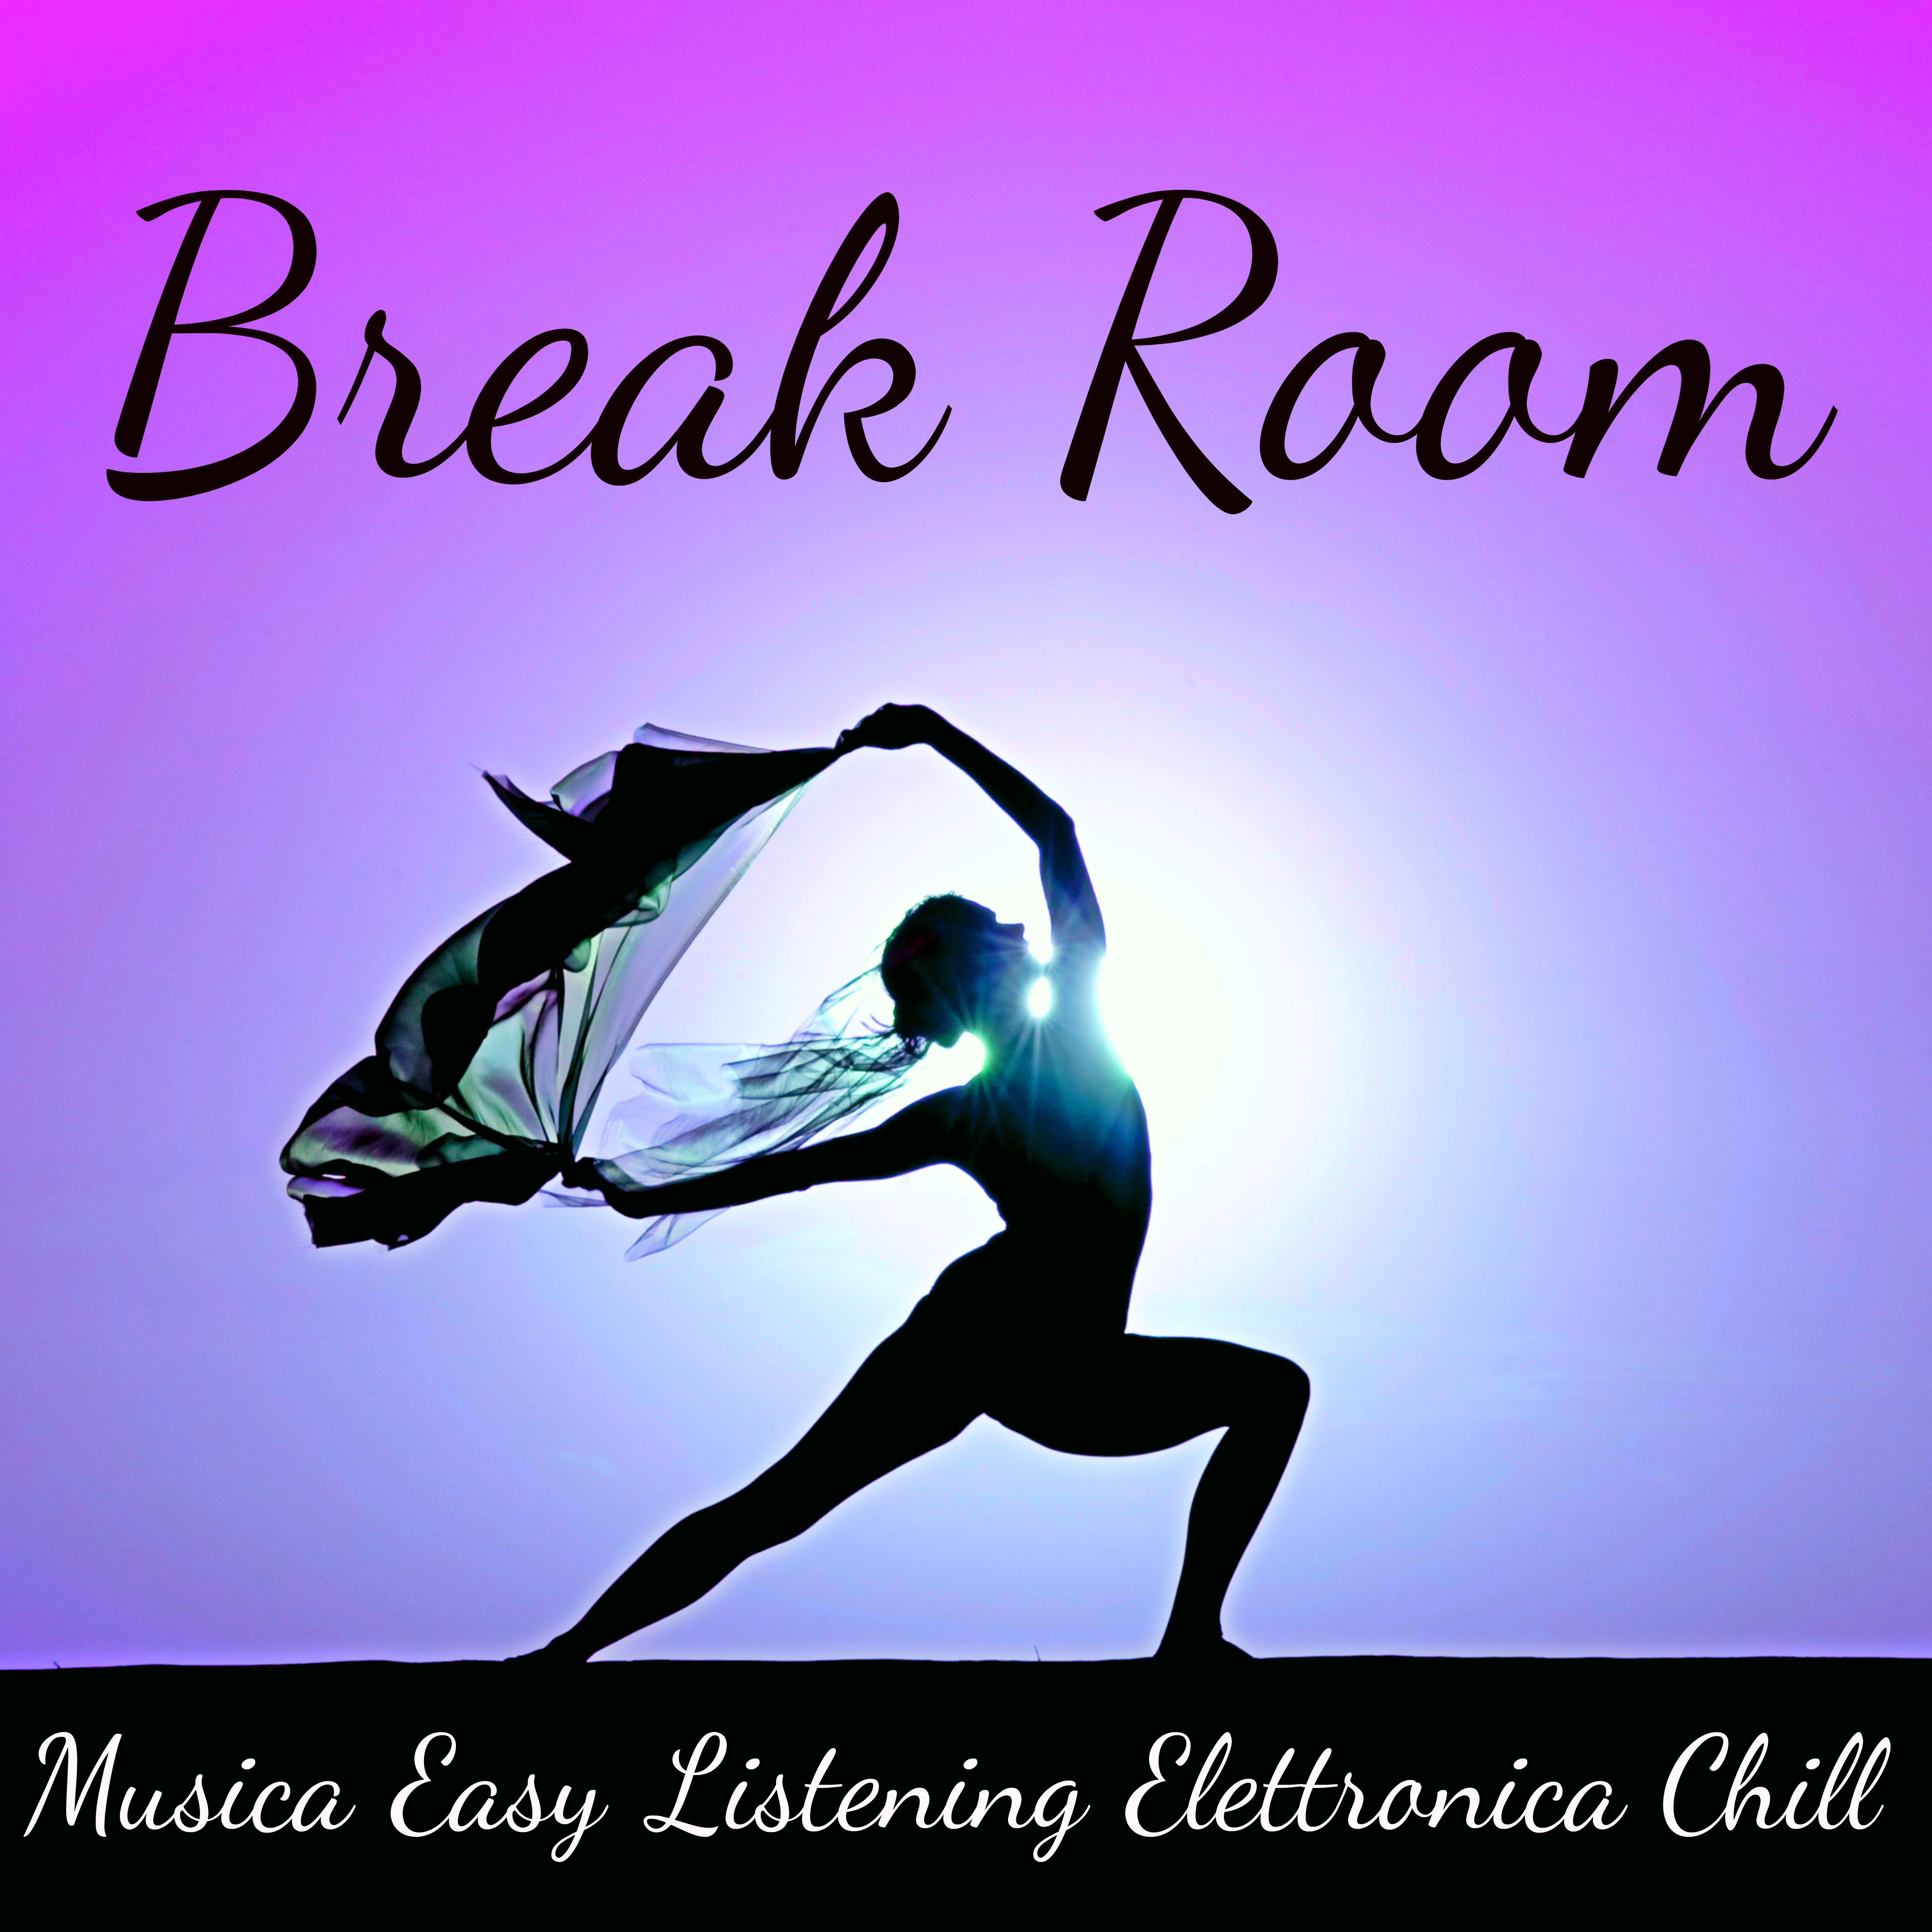 Break Room - Musica Easy Listening Elettronica Chill per la Cura del Corpo e Mente, Esercizi di Pilates e Meditation Time